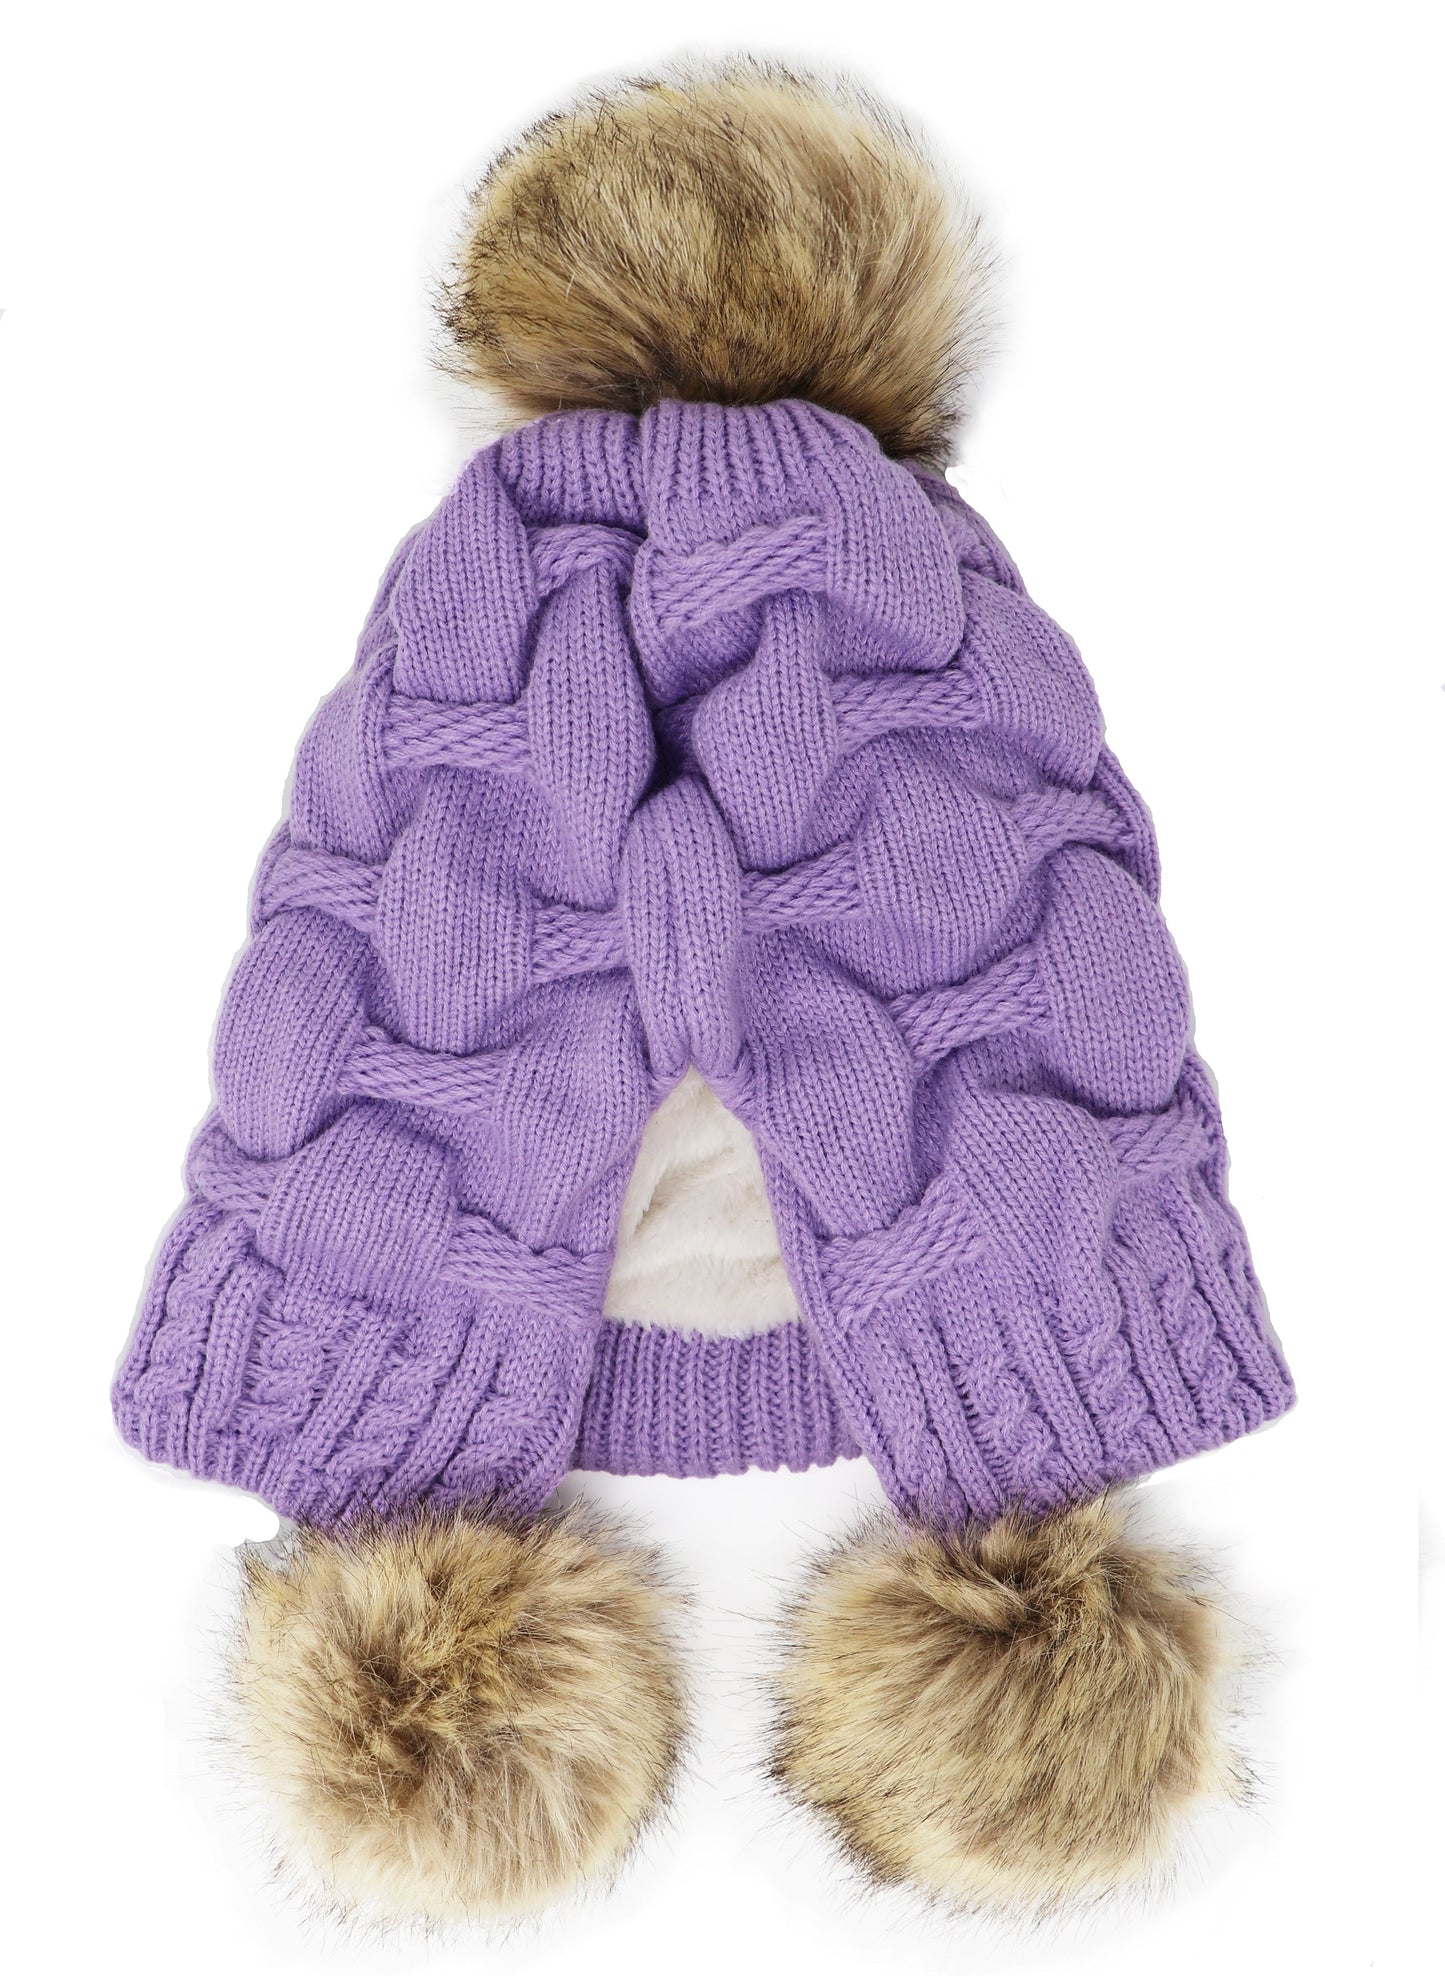 Bonnet tricoté à pompons d'hiver froissé, taille unique